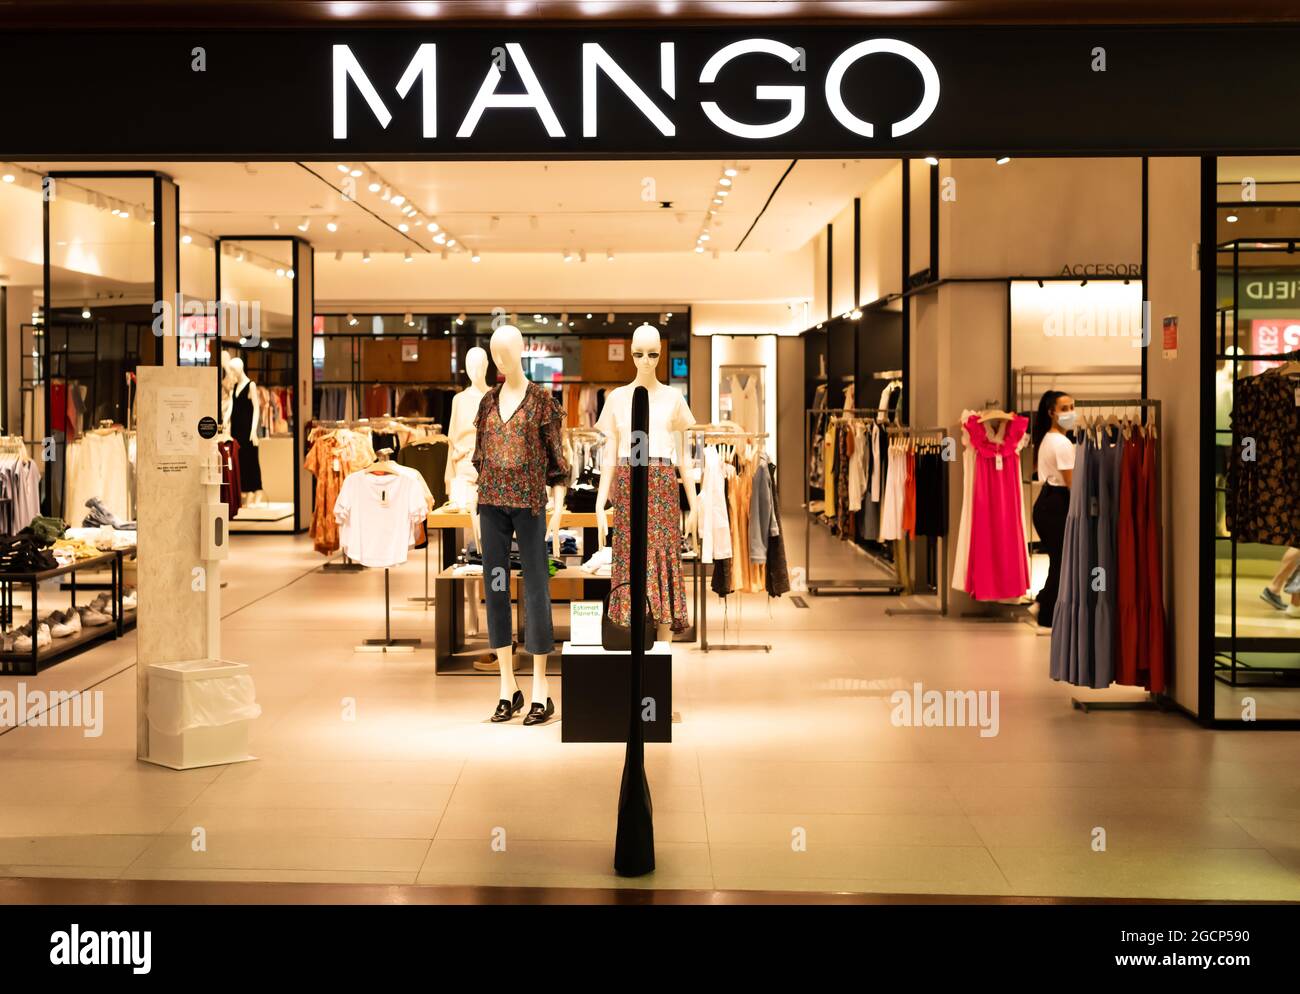 BARCELONE, ESPAGNE - 04 août 2021 : Barcelone, Catalogne, Espagne - 4 août  2021 : magasin Mango à l'intérieur d'un centre commercial. Mango est une  marque de vêtements femme de Photo Stock - Alamy